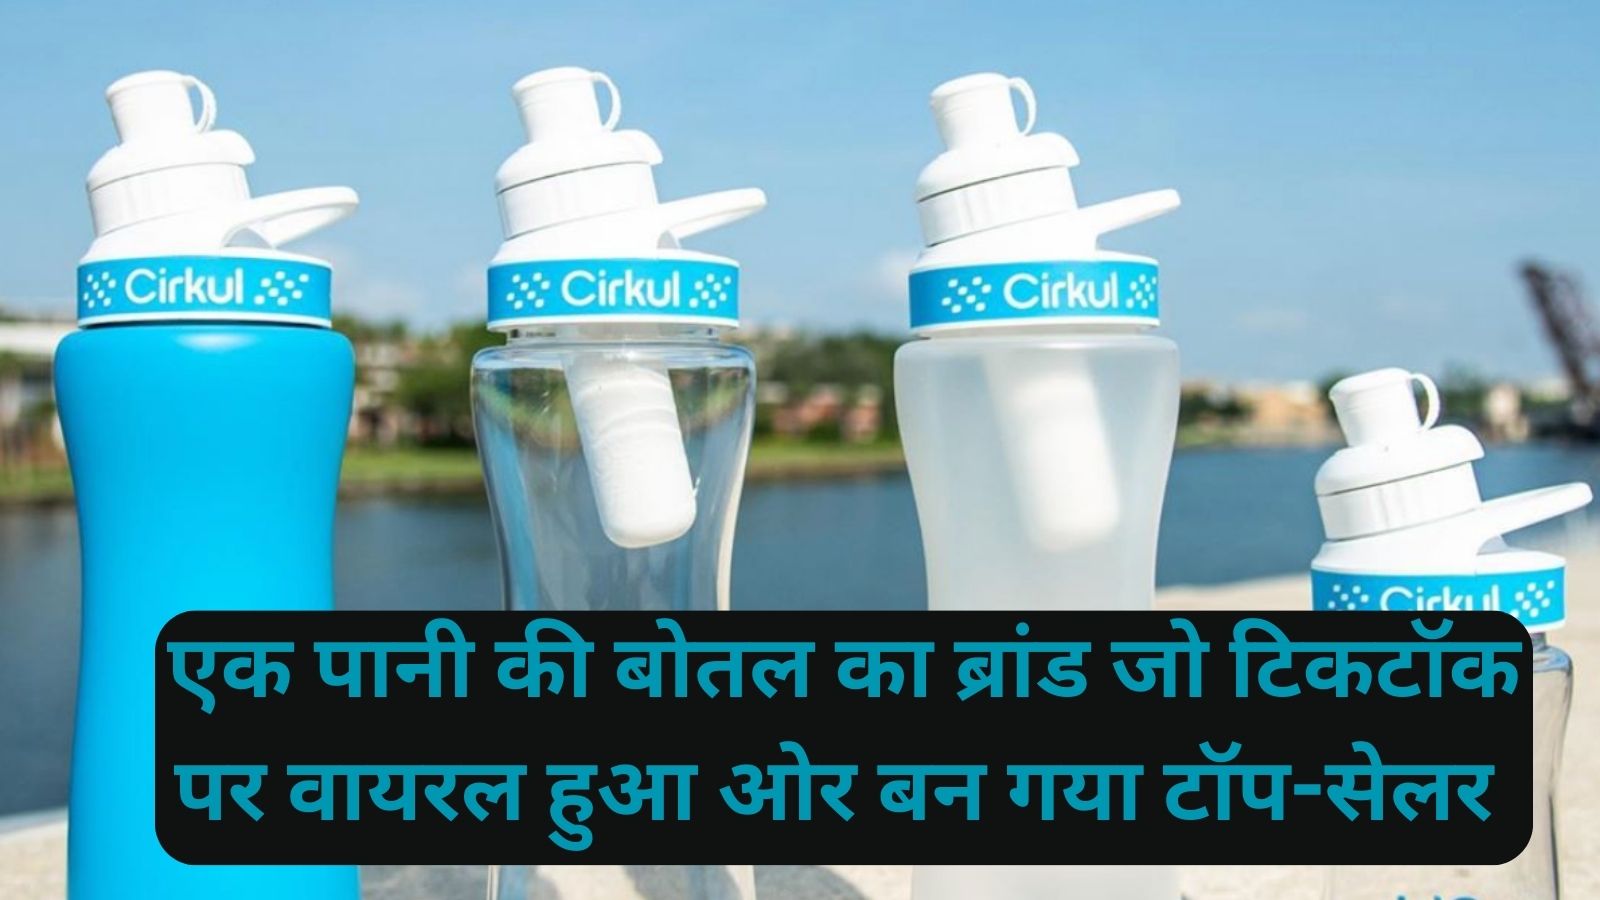 Cirkul Water Bottle:एक पानी की बोतल का ब्रांड जो टिकटॉक पर वायरल हुआ ओर बन गया टॉप-सेलर